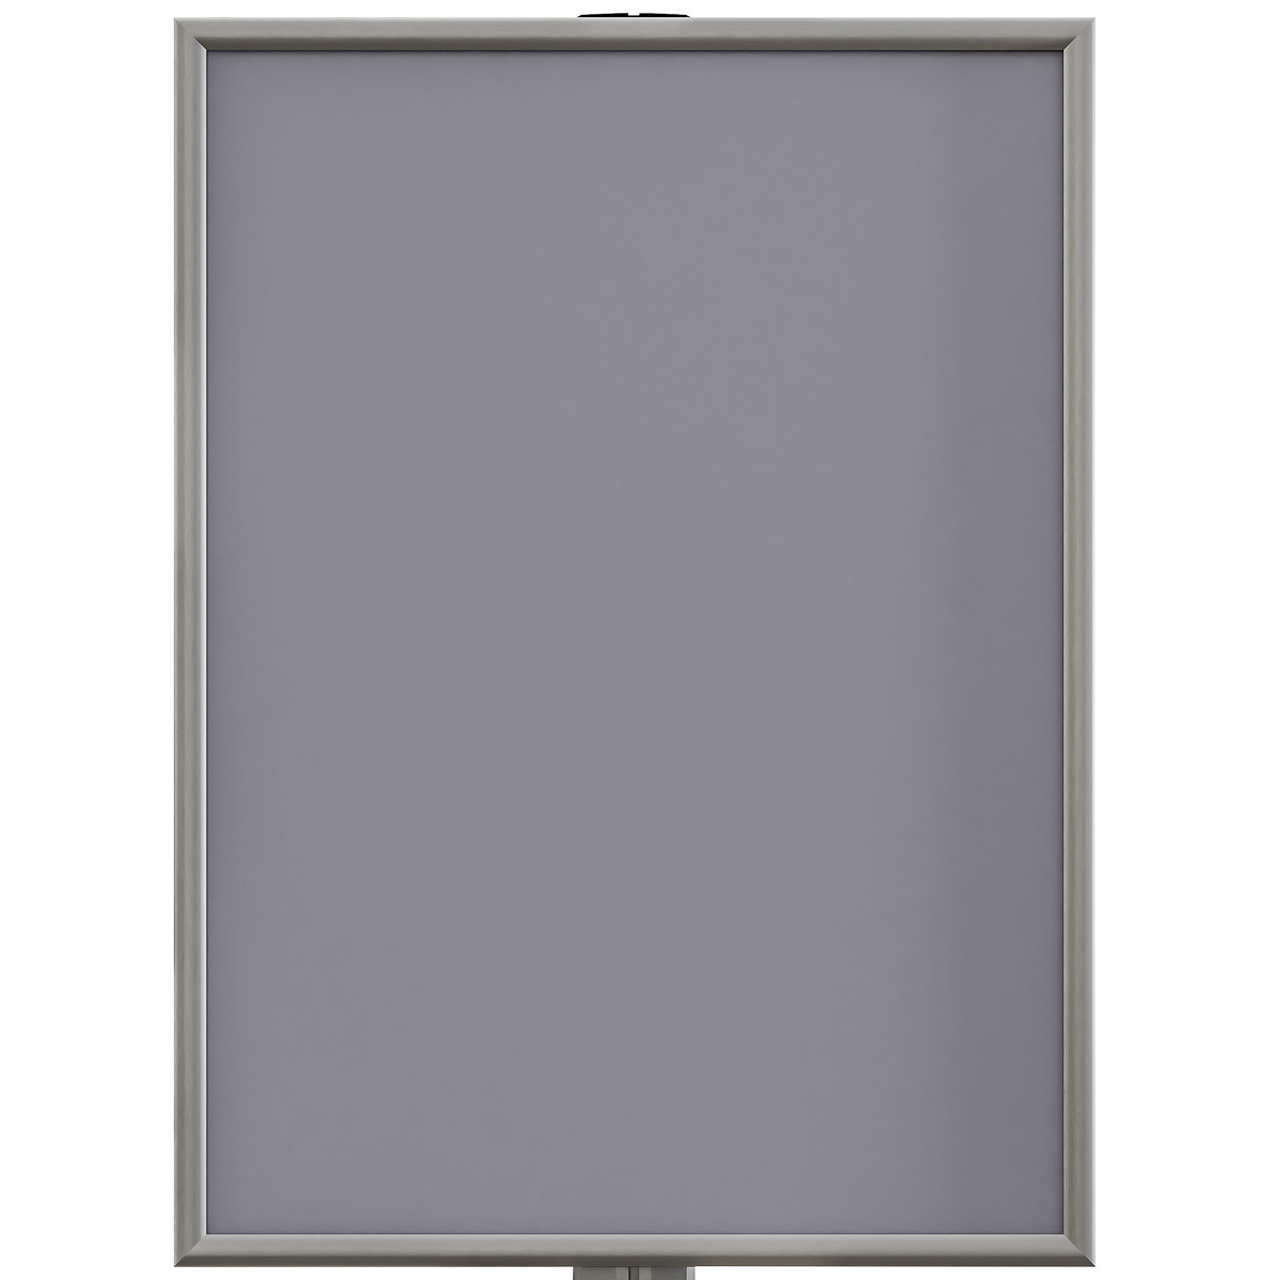 Info Board SL, stand pentru afișaj cu ramă click și picior din profil SL aluminiu, B2 (500x700mm) expunere dublă față.